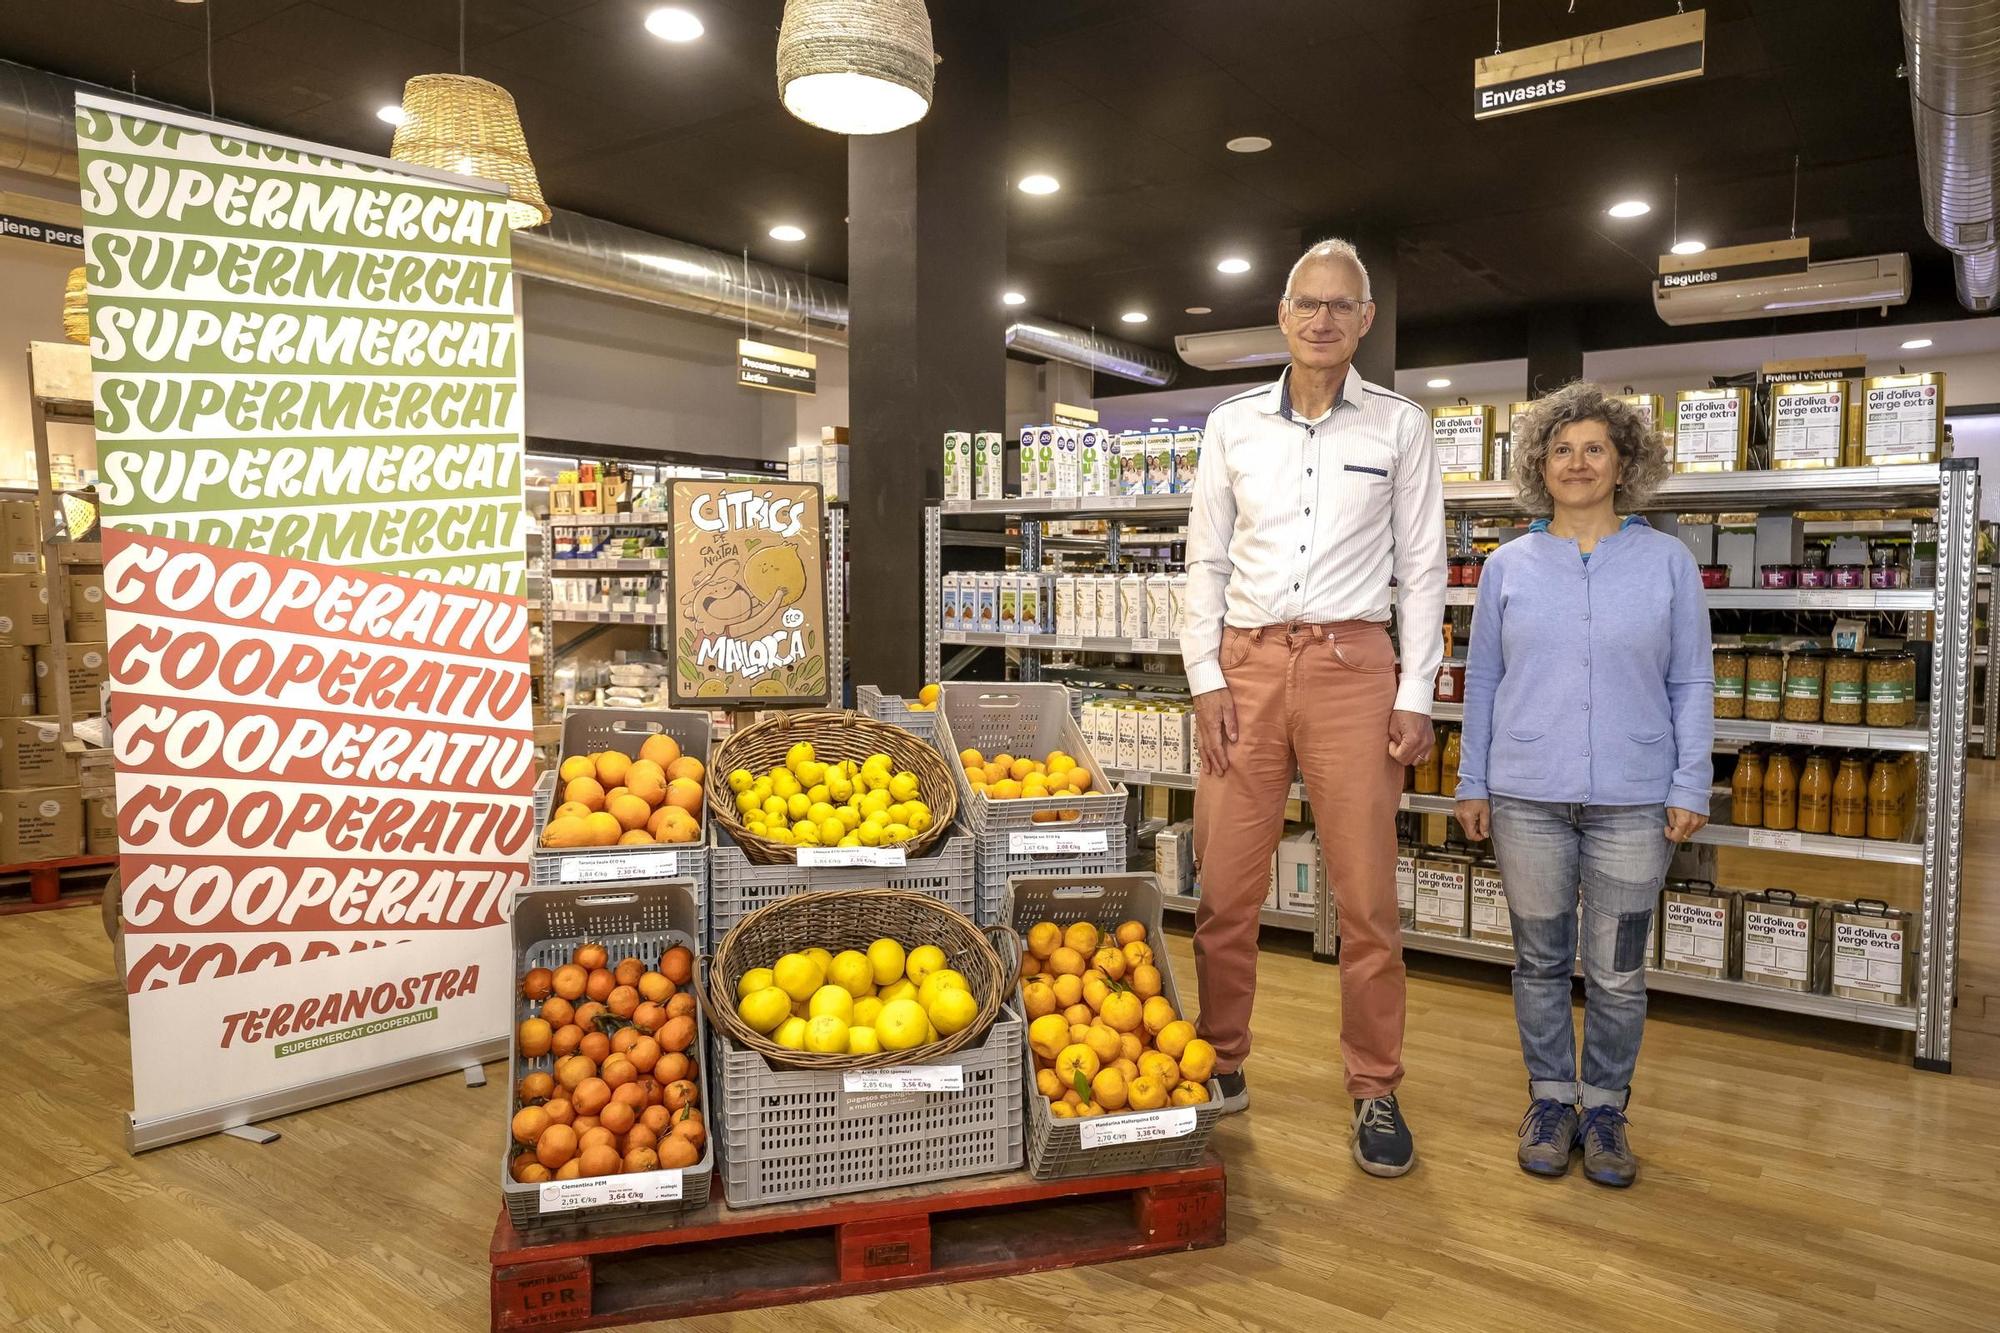 Supermercado Terranostra en Palma